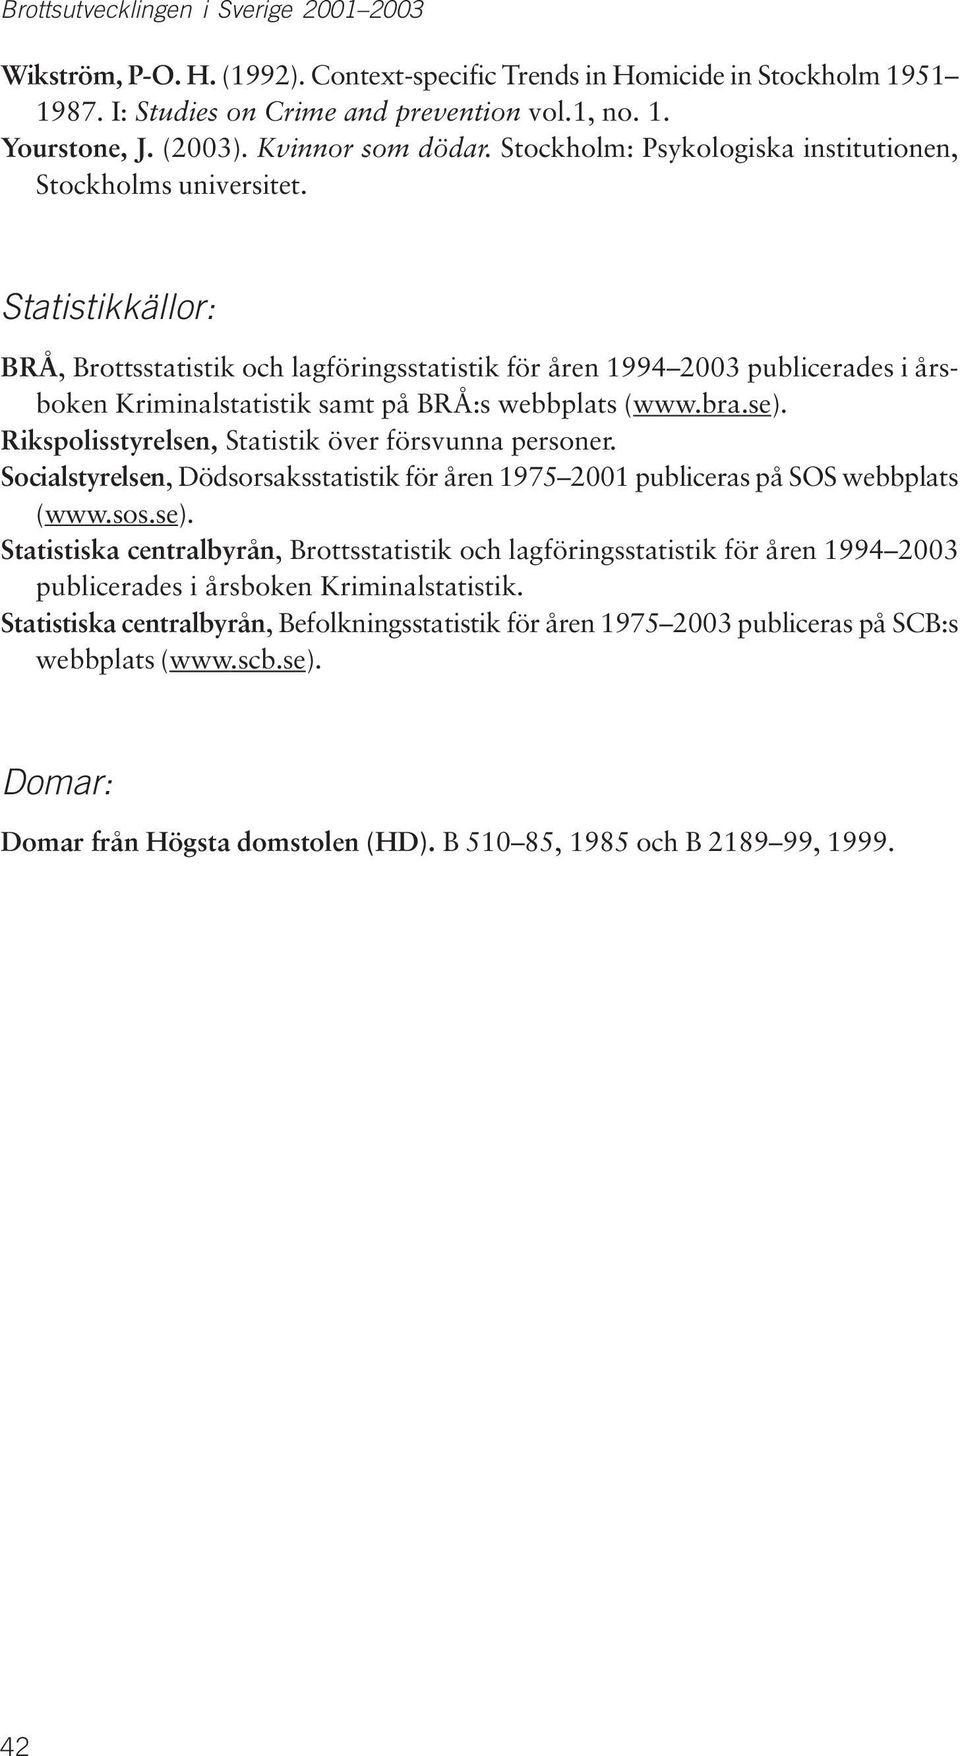 Statistikkällor: BRÅ, Brottsstatistik och lagföringsstatistik för åren 1994 2003 publicerades i årsboken Kriminalstatistik samt på BRÅ:s webbplats (www.bra.se).